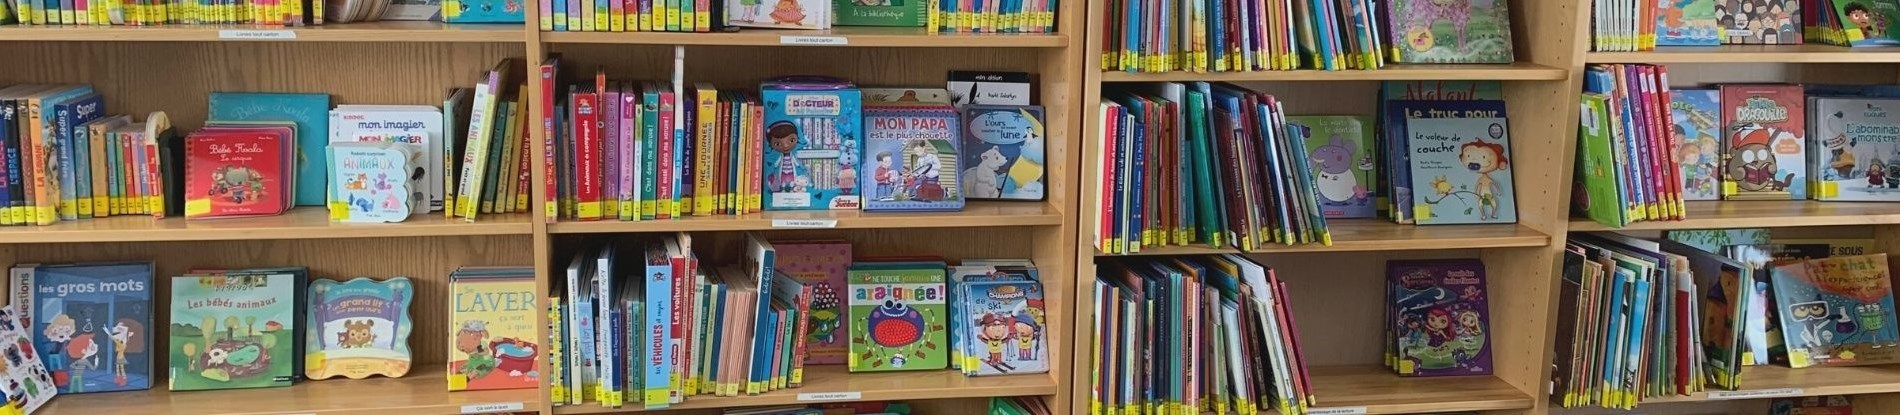 Kids books on shelves